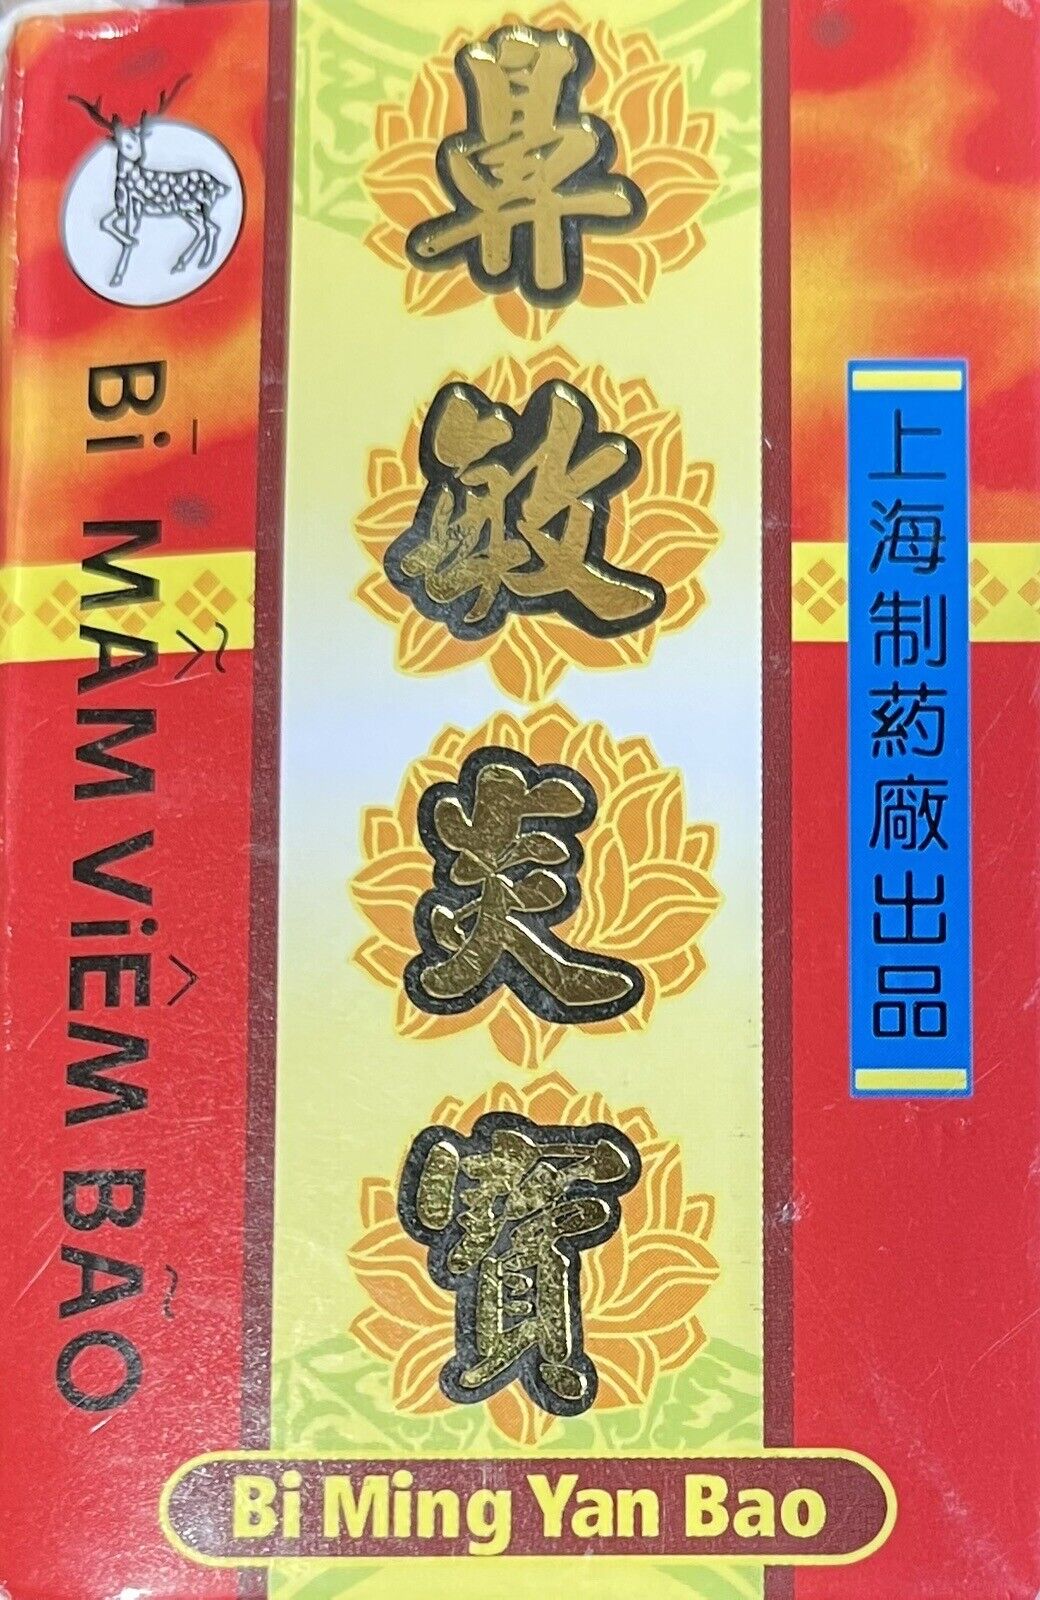 Bi Ming Yan Bao